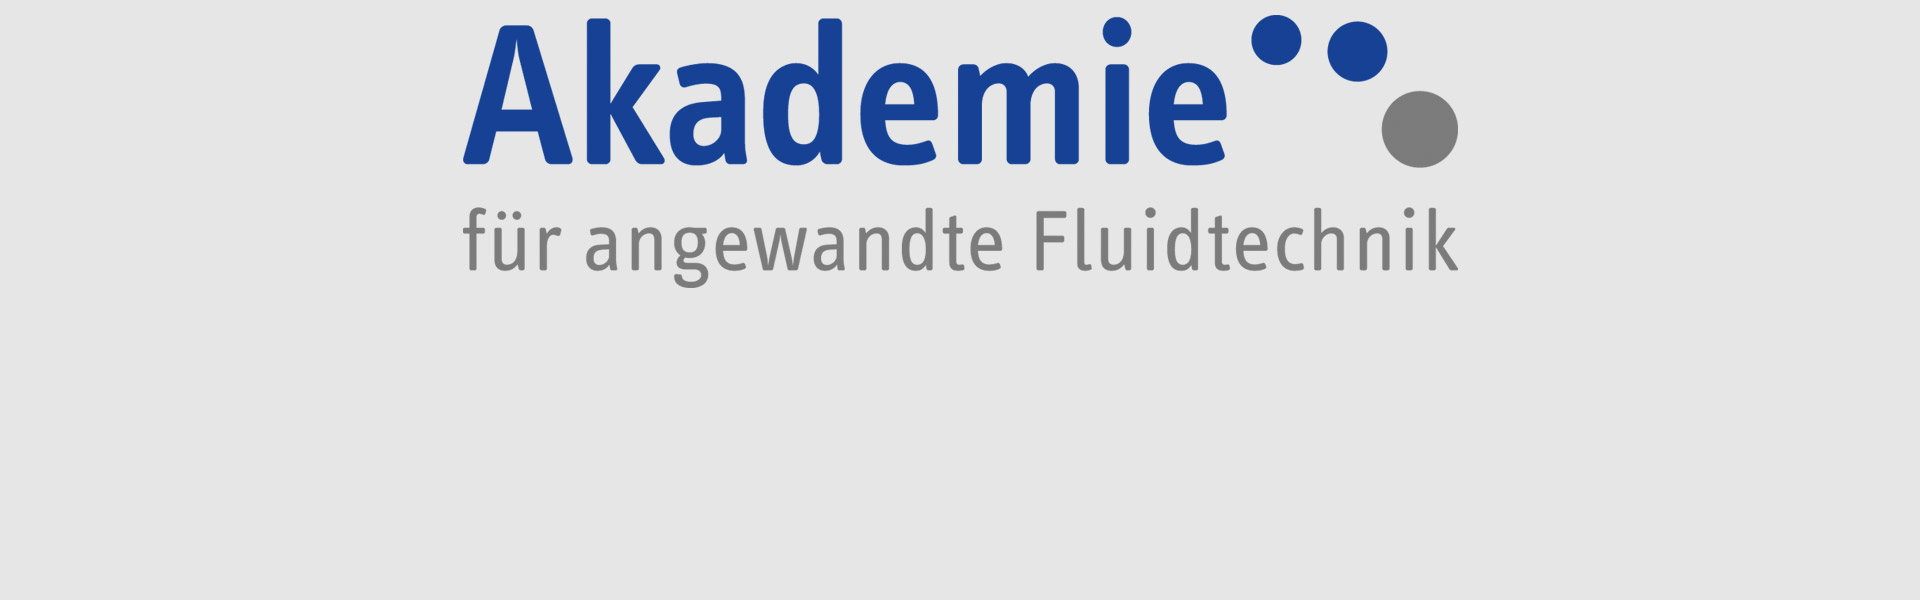 Akademie für angewandte Fluidtechnik GmbH + Co. KG